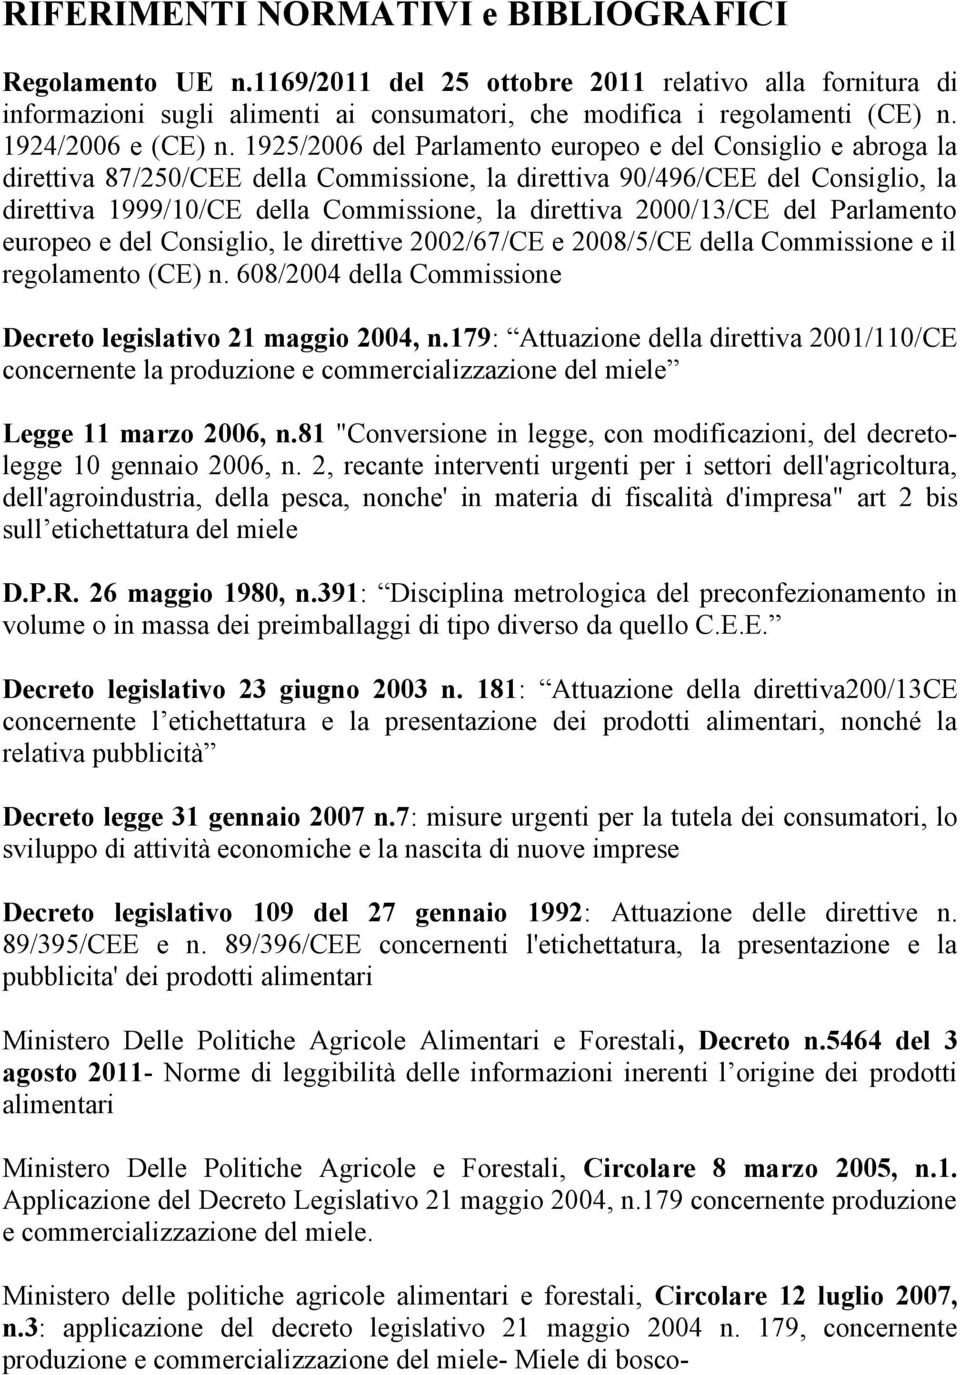 1925/2006 del Parlamento europeo e del Consiglio e abroga la direttiva 87/250/CEE della Commissione, la direttiva 90/496/CEE del Consiglio, la direttiva 1999/10/CE della Commissione, la direttiva